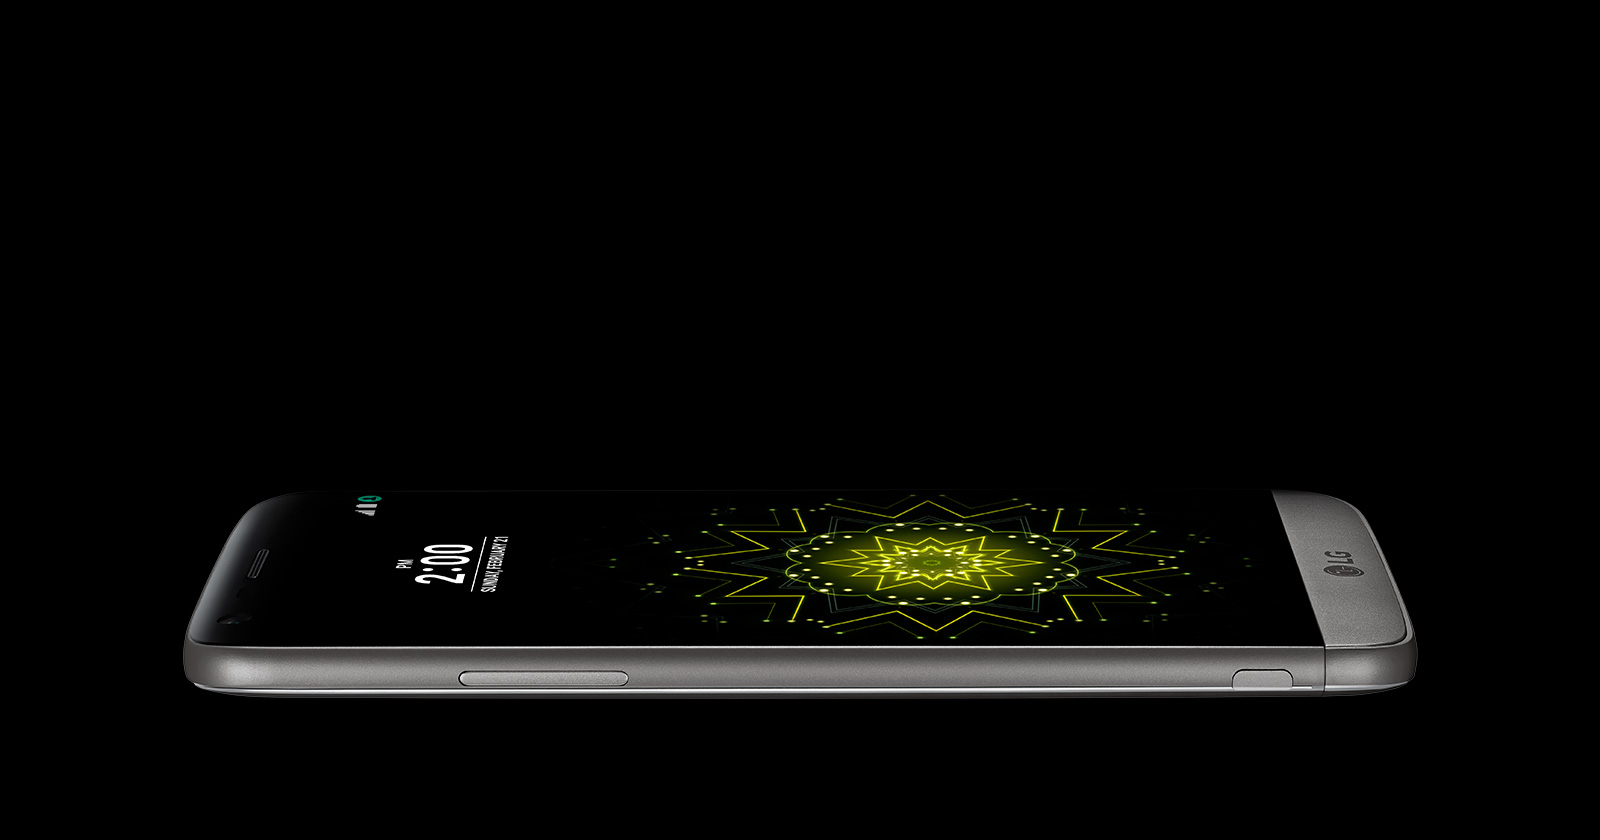 LG G5 review- G5 has a sleek design